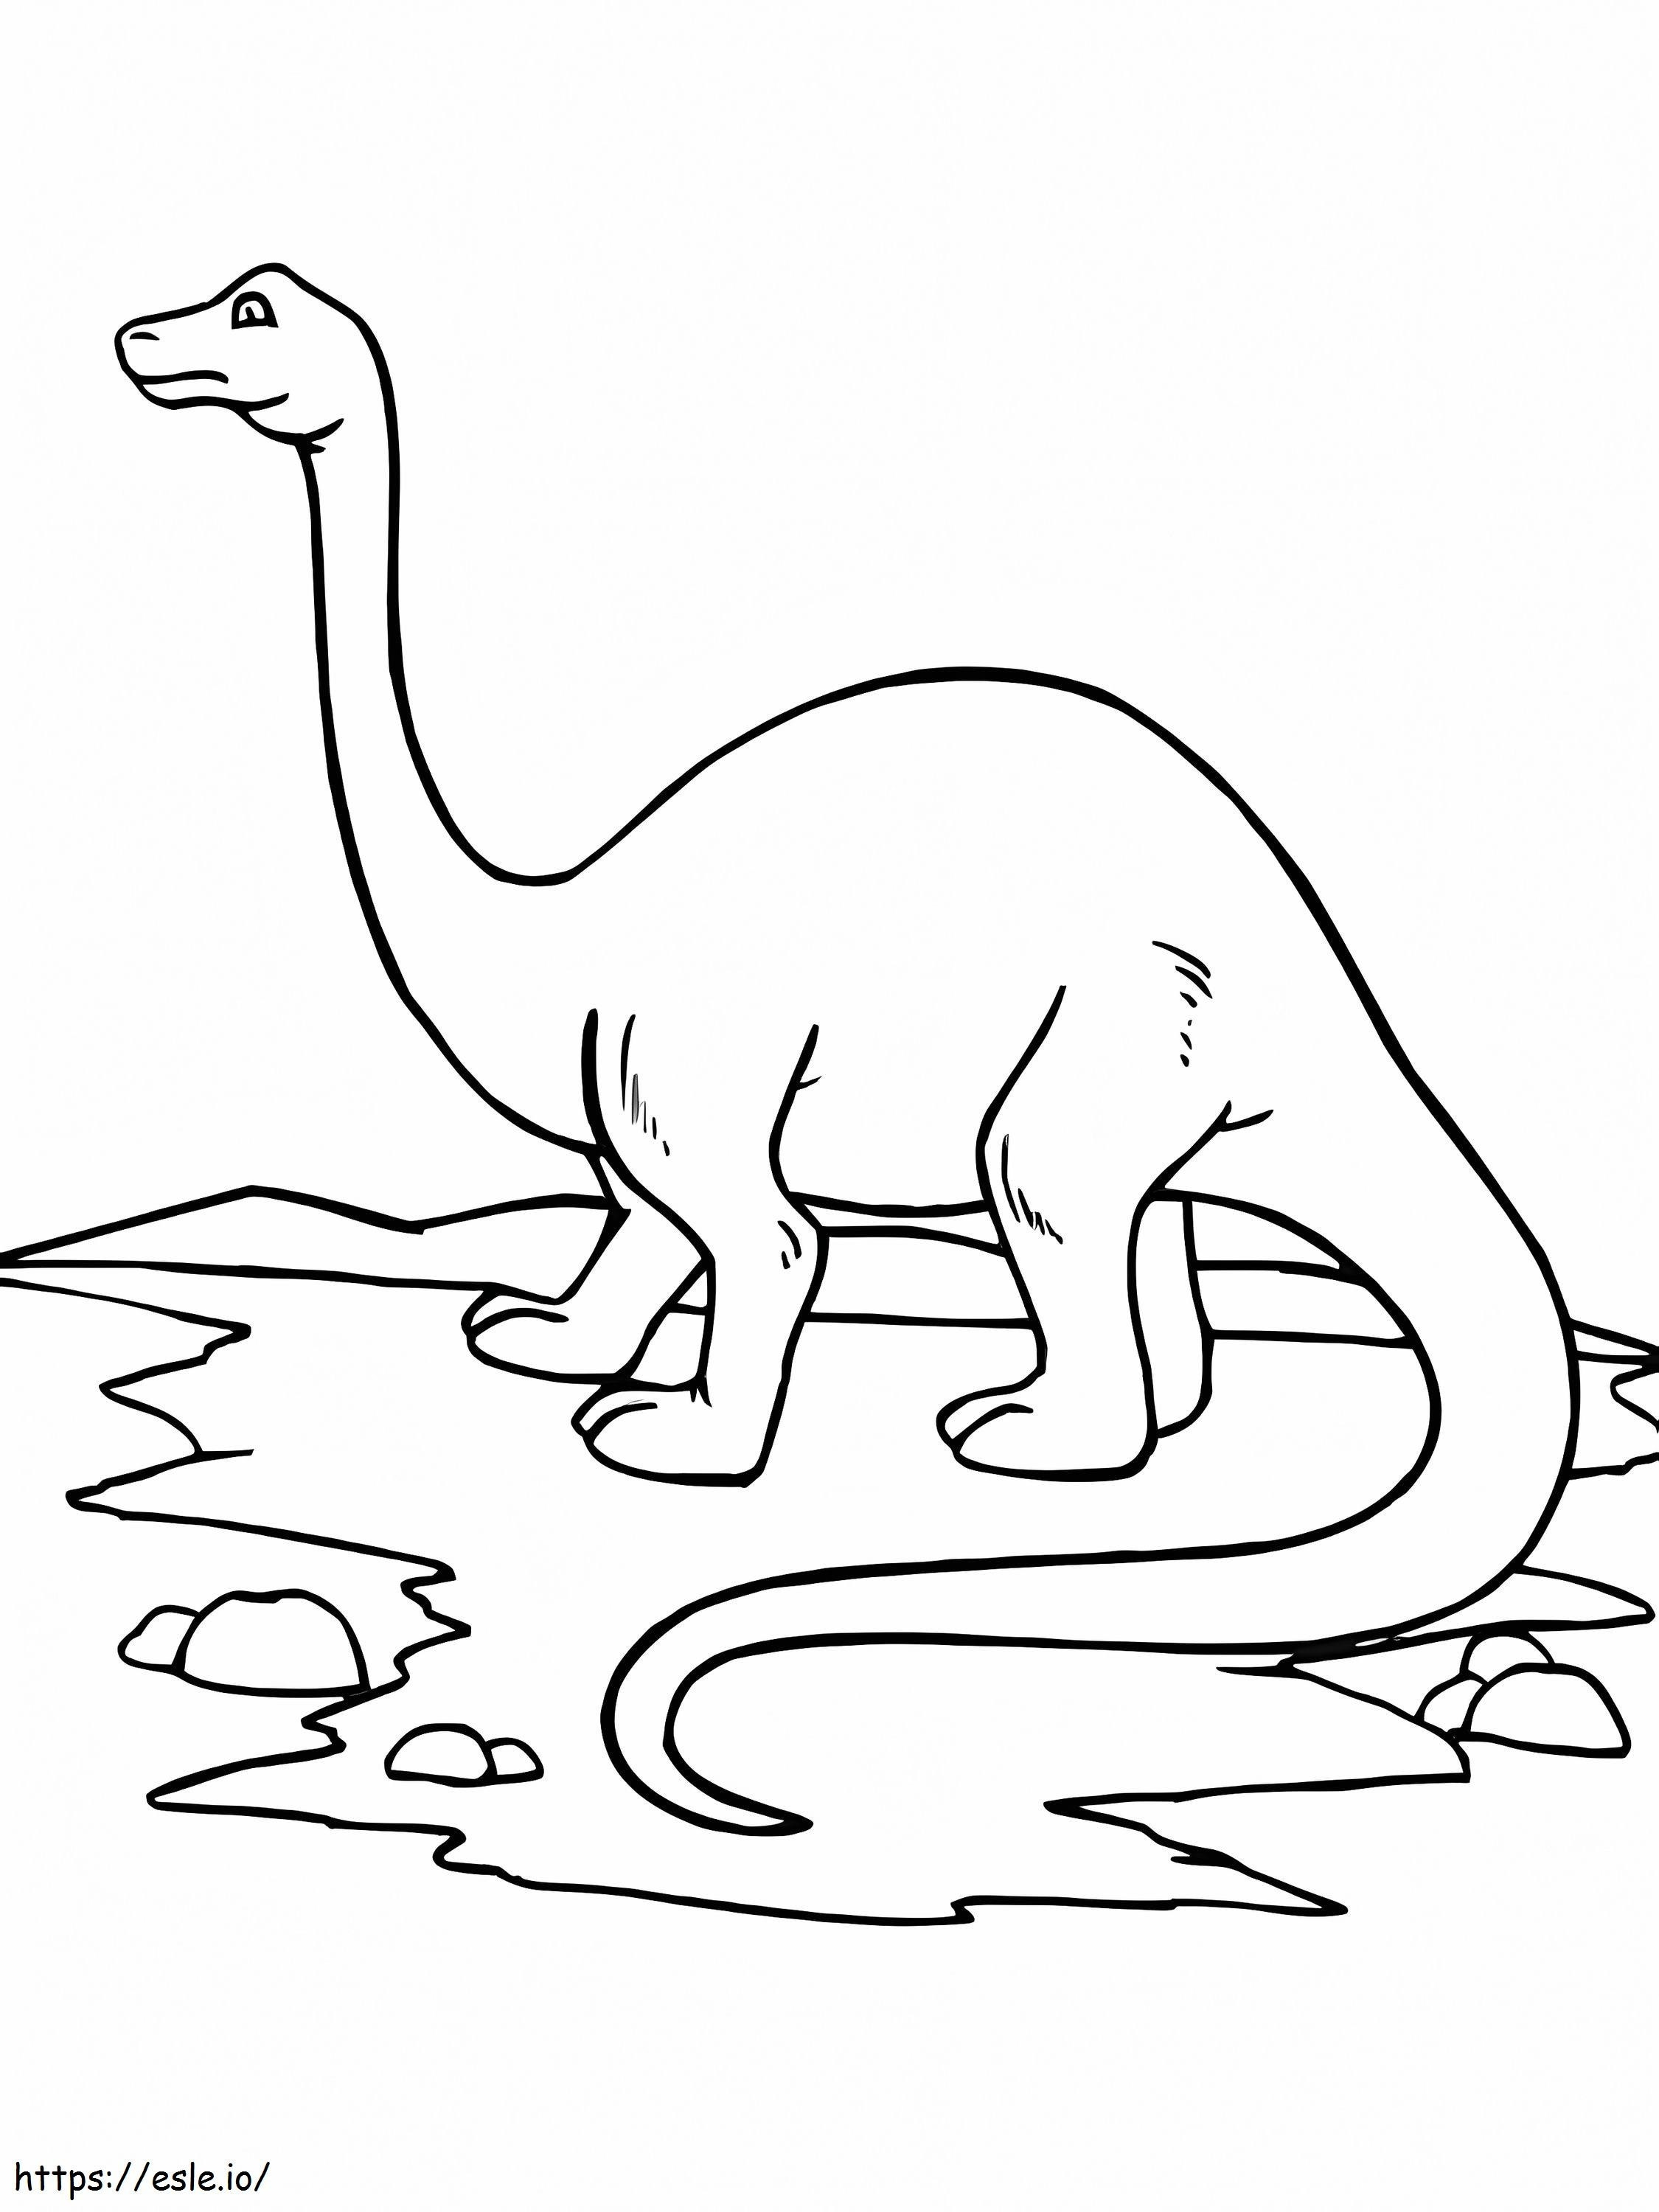 Brontosauro 2 da colorare